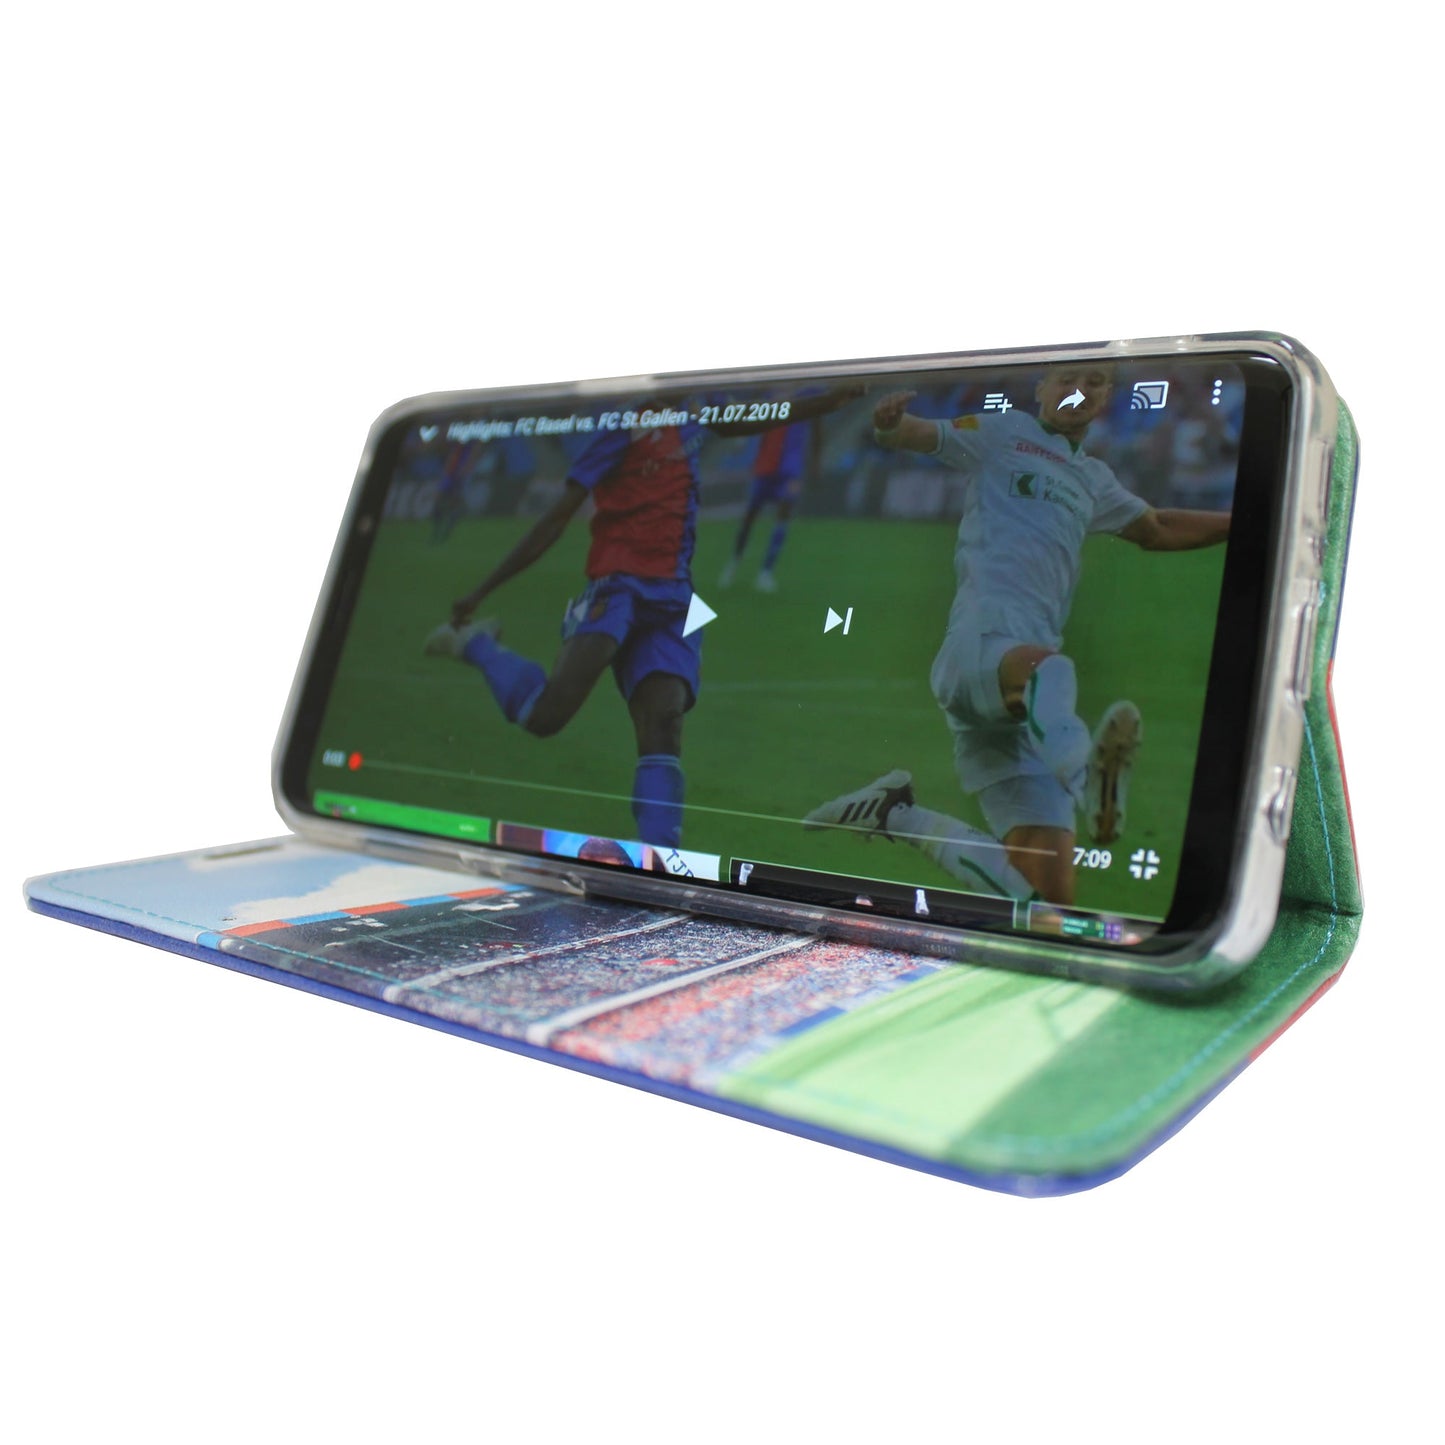 Coque panoramique FCB rouge/bleue pour Samsung Galaxy S8